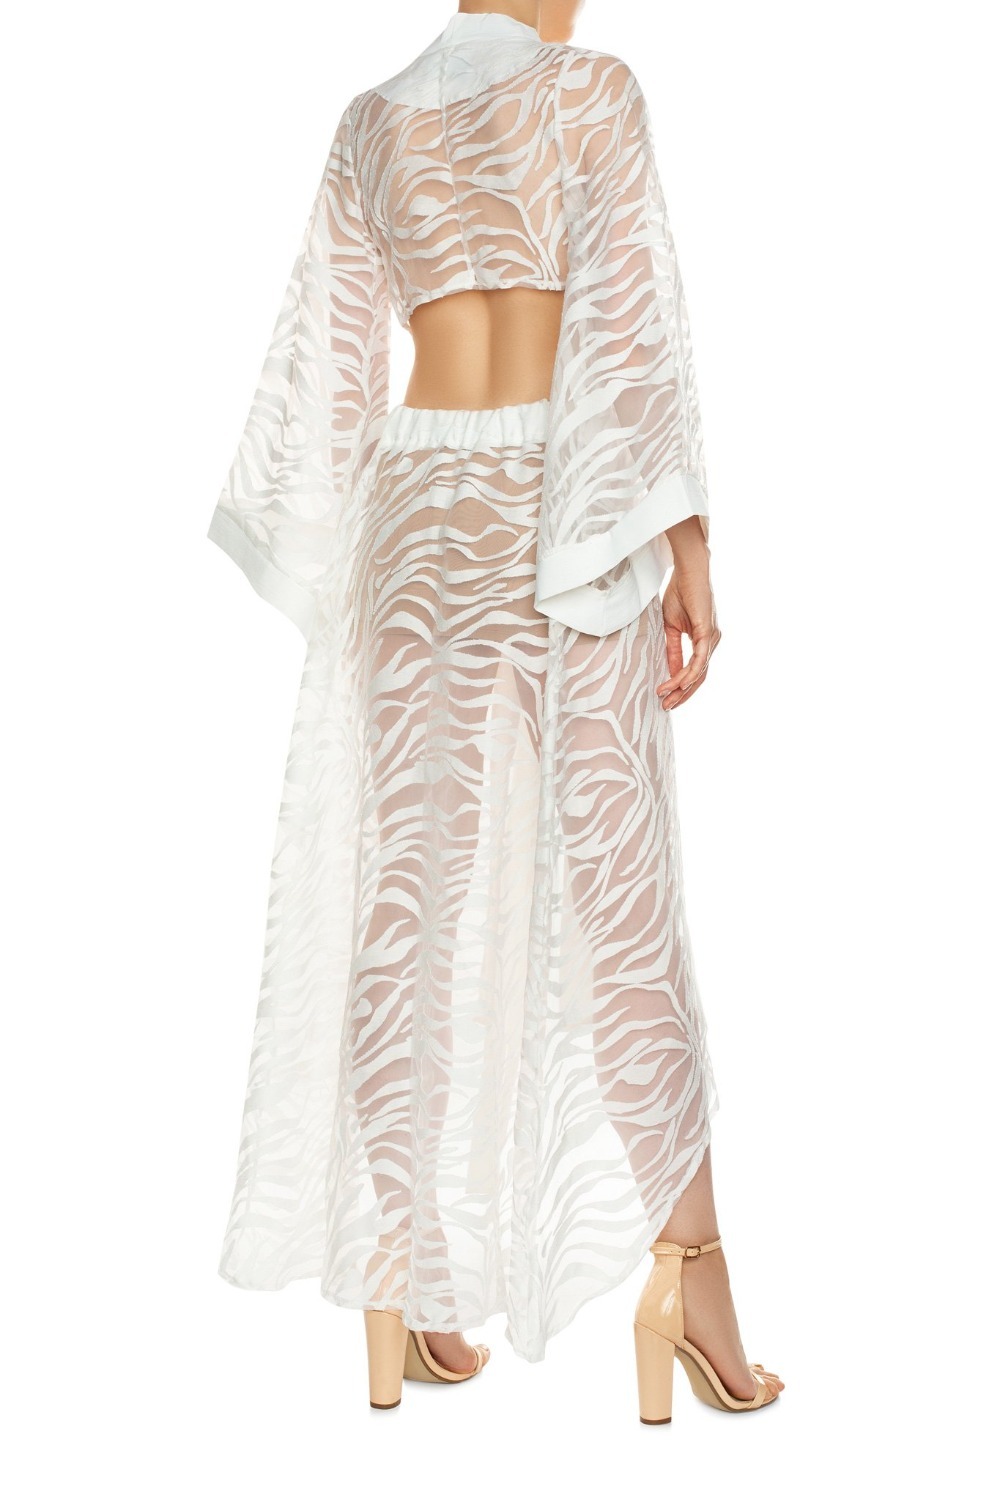 Sevilla Transparent Kimono White Dress